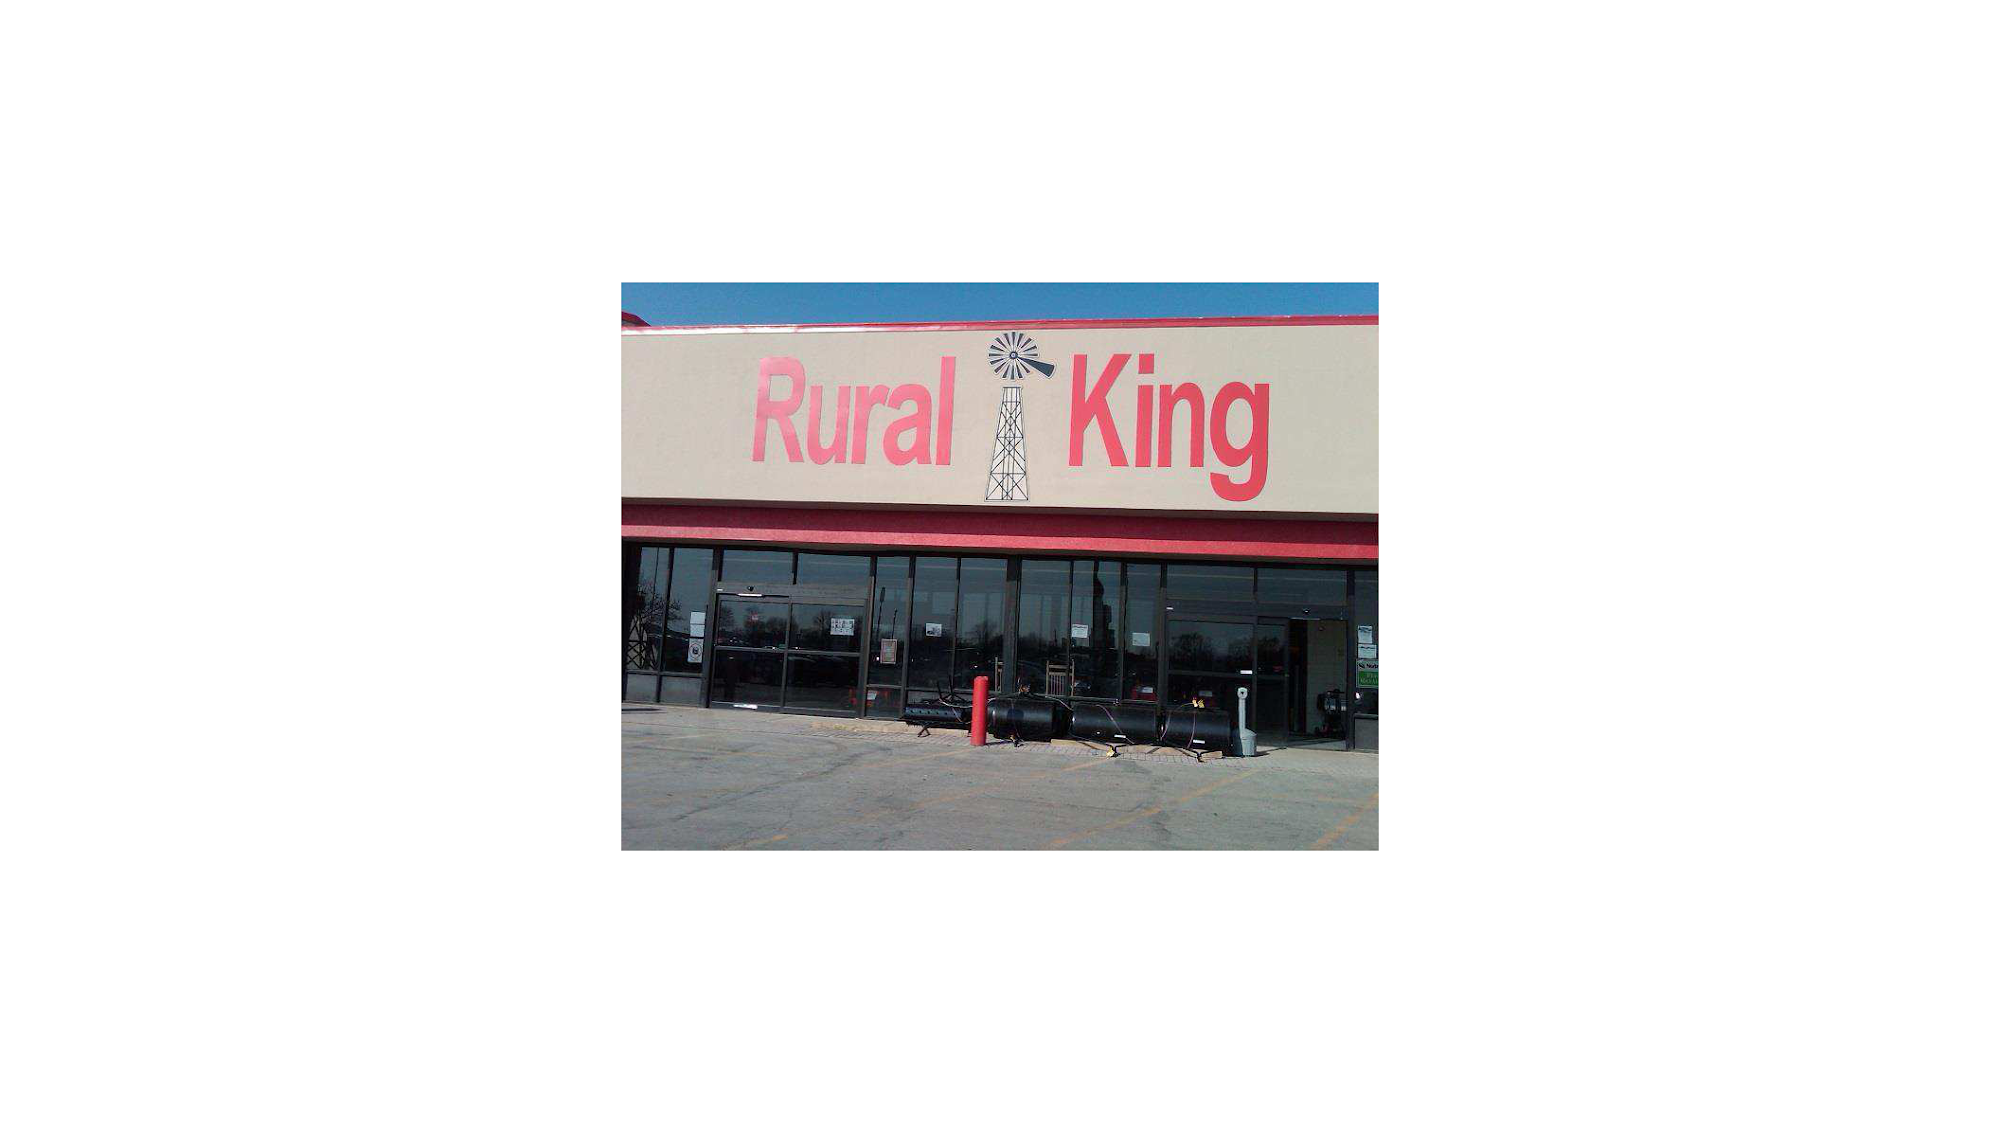 Rural King Guns